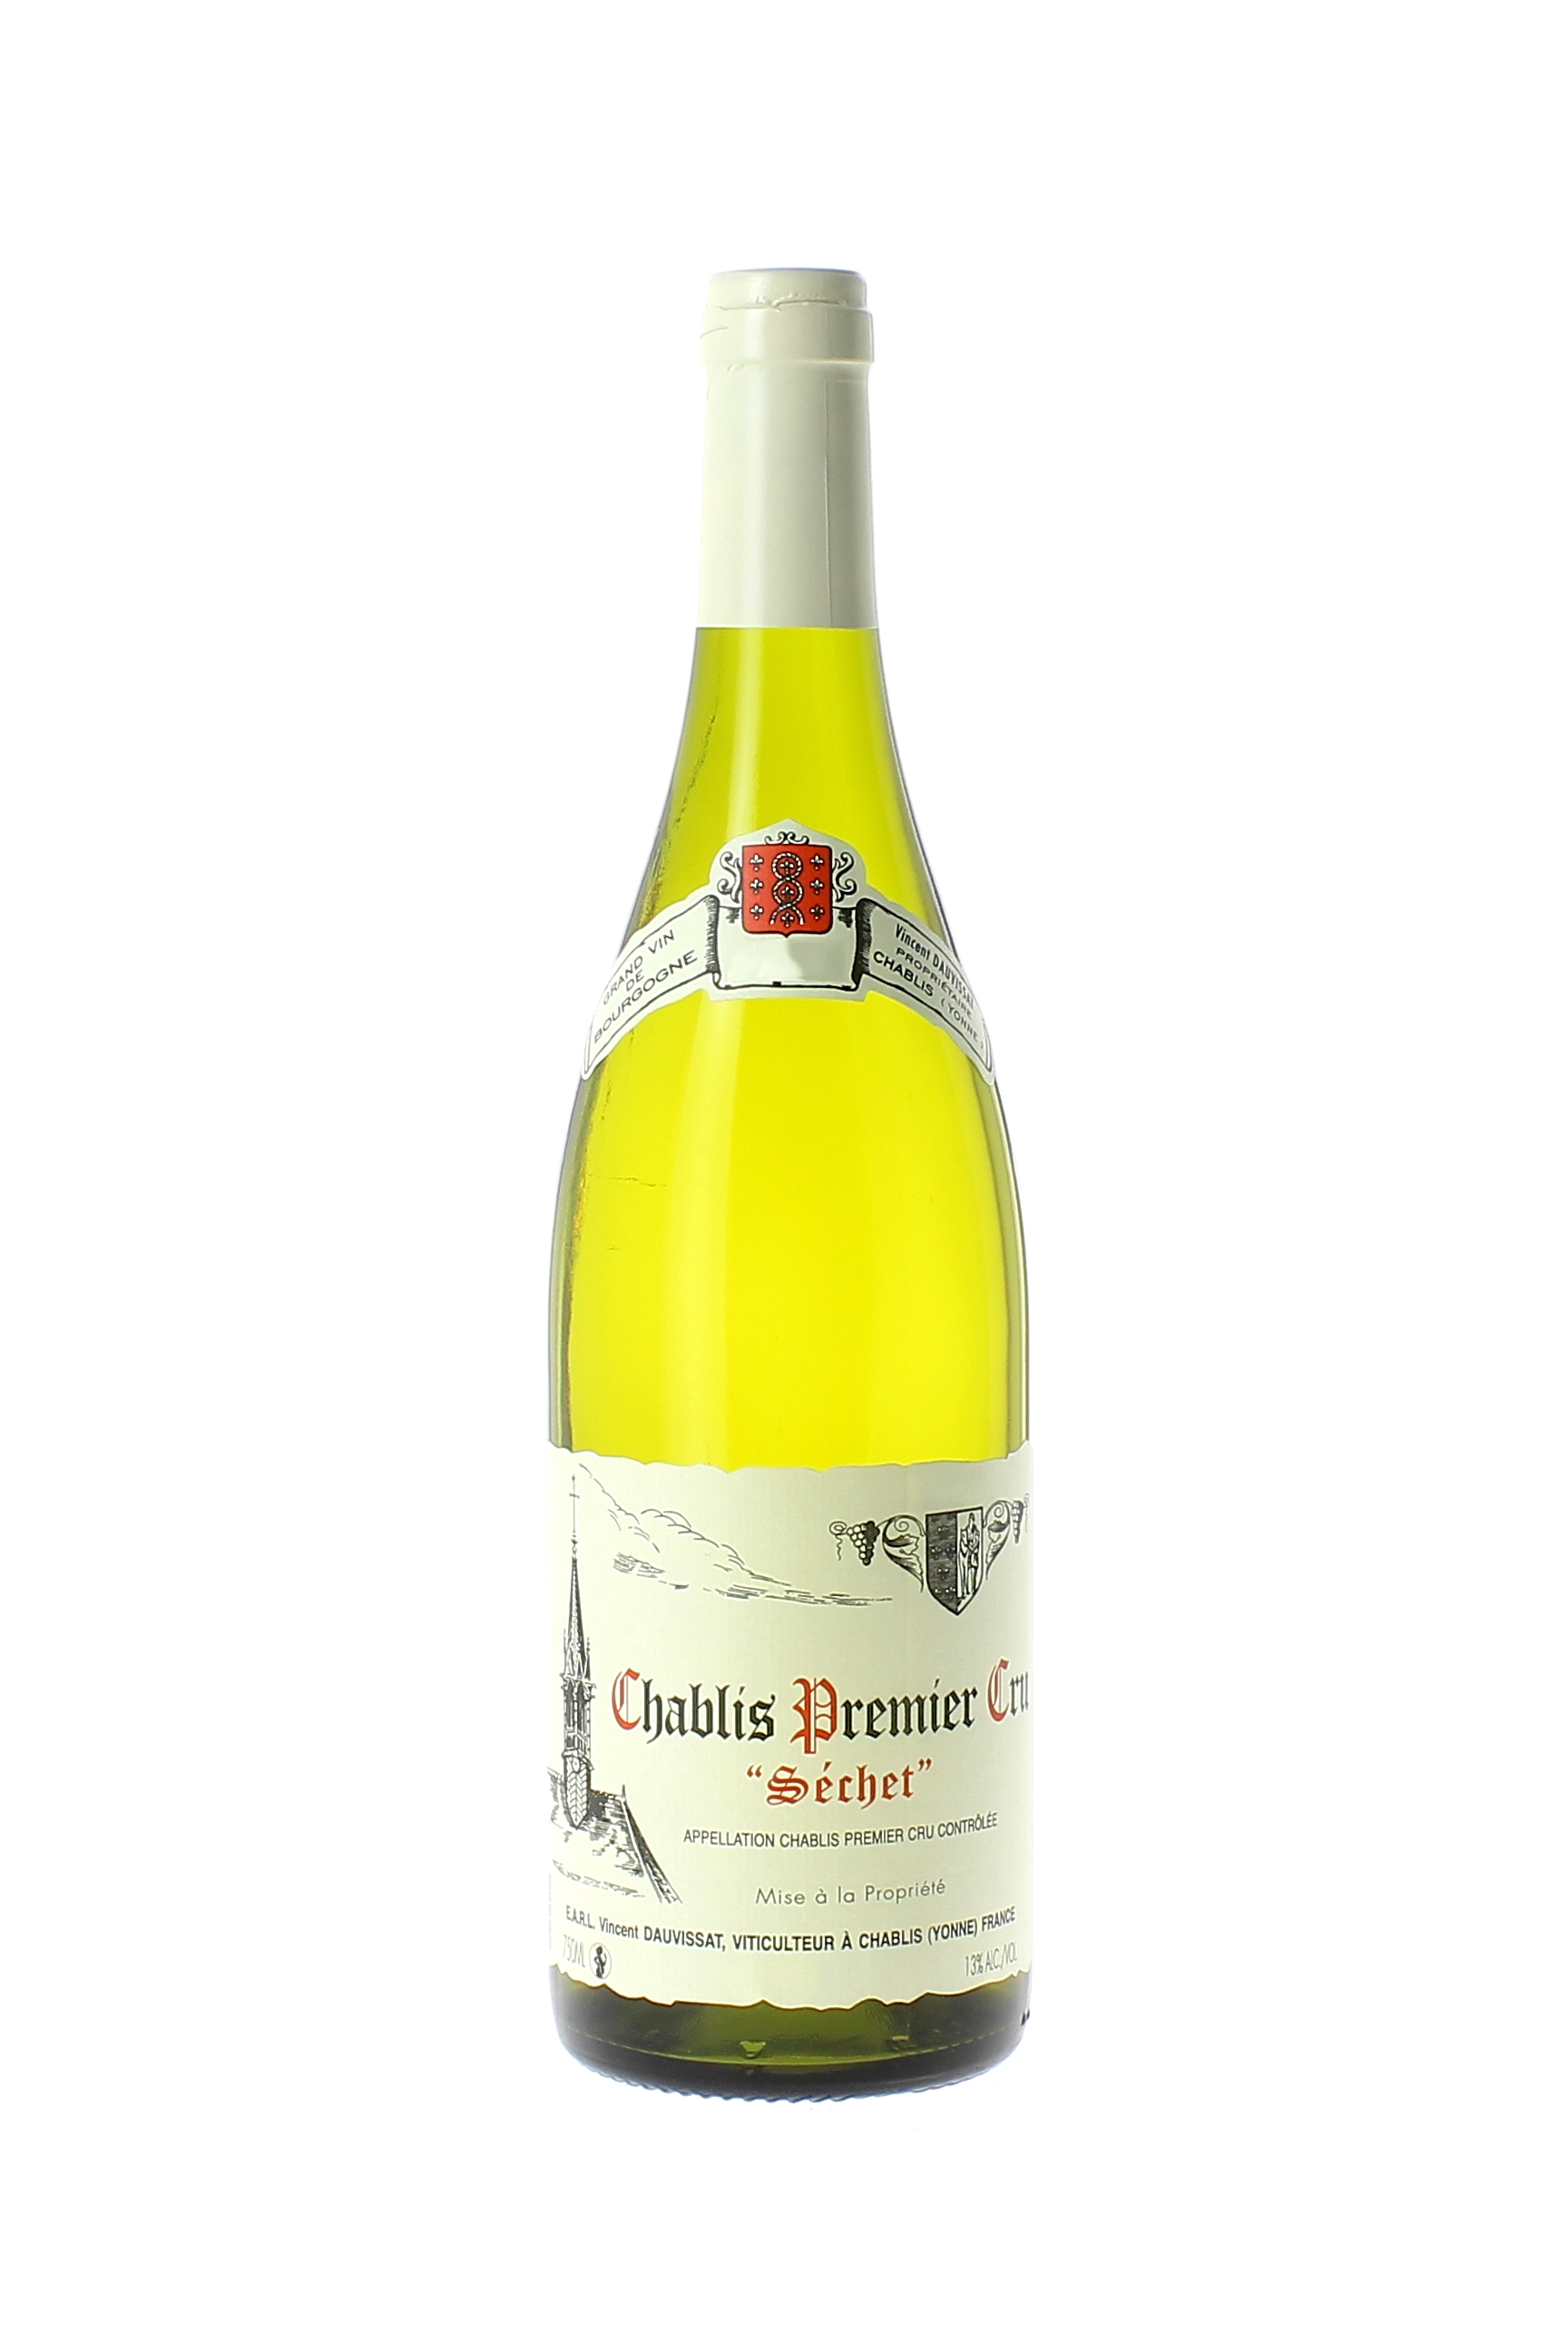 Chablis 1er cru sechet 2012 Domaine DAUVISSAT, Bourgogne blanc